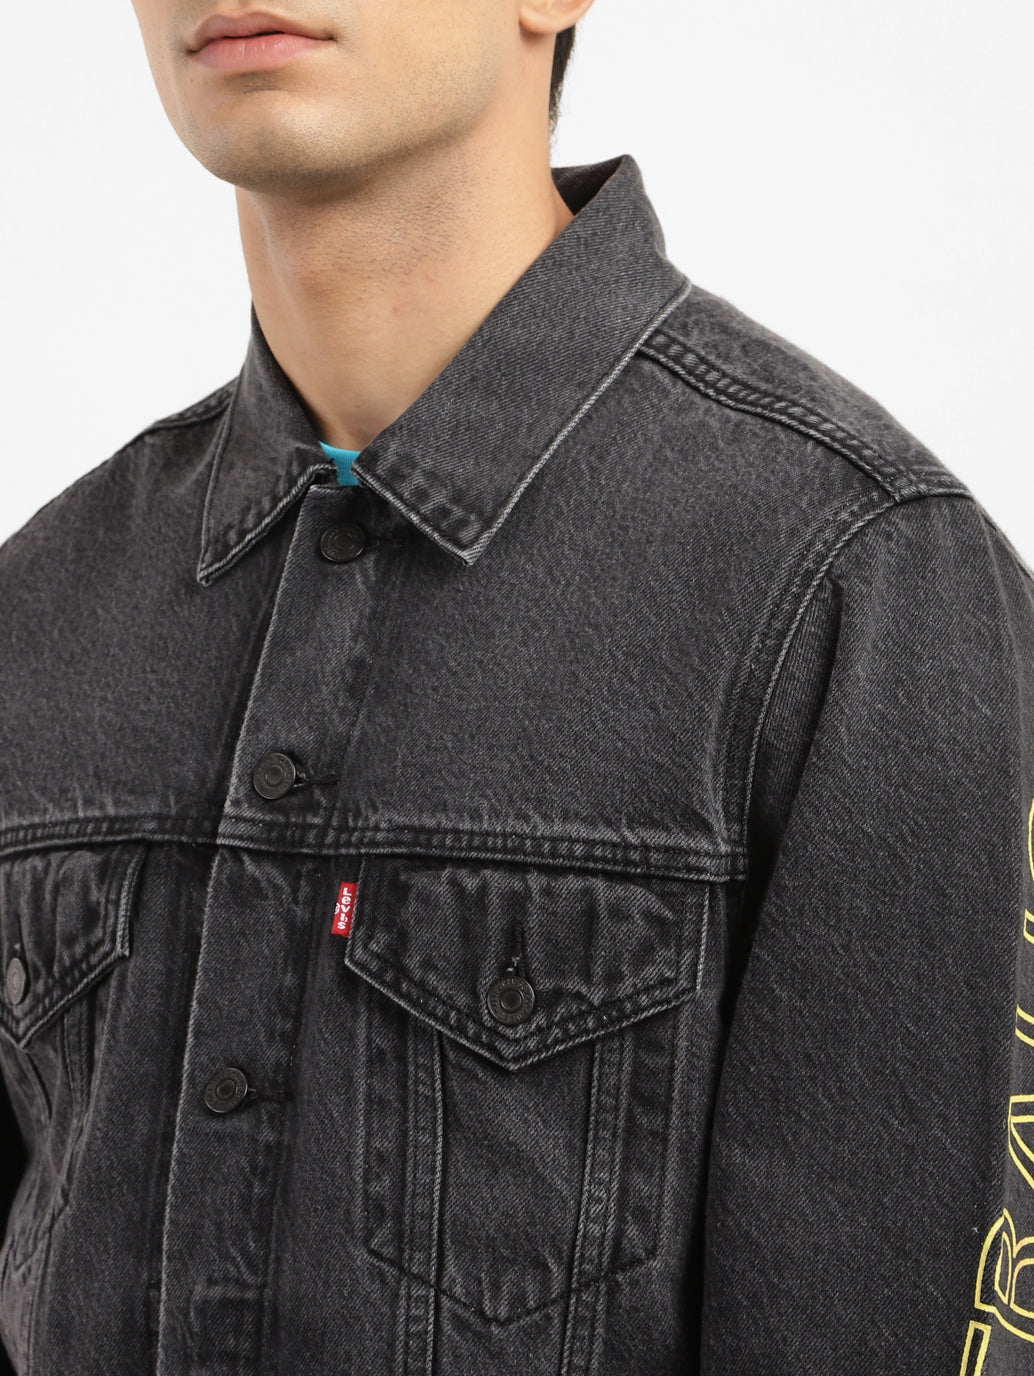 Men's Printed Spread Collar Jackets